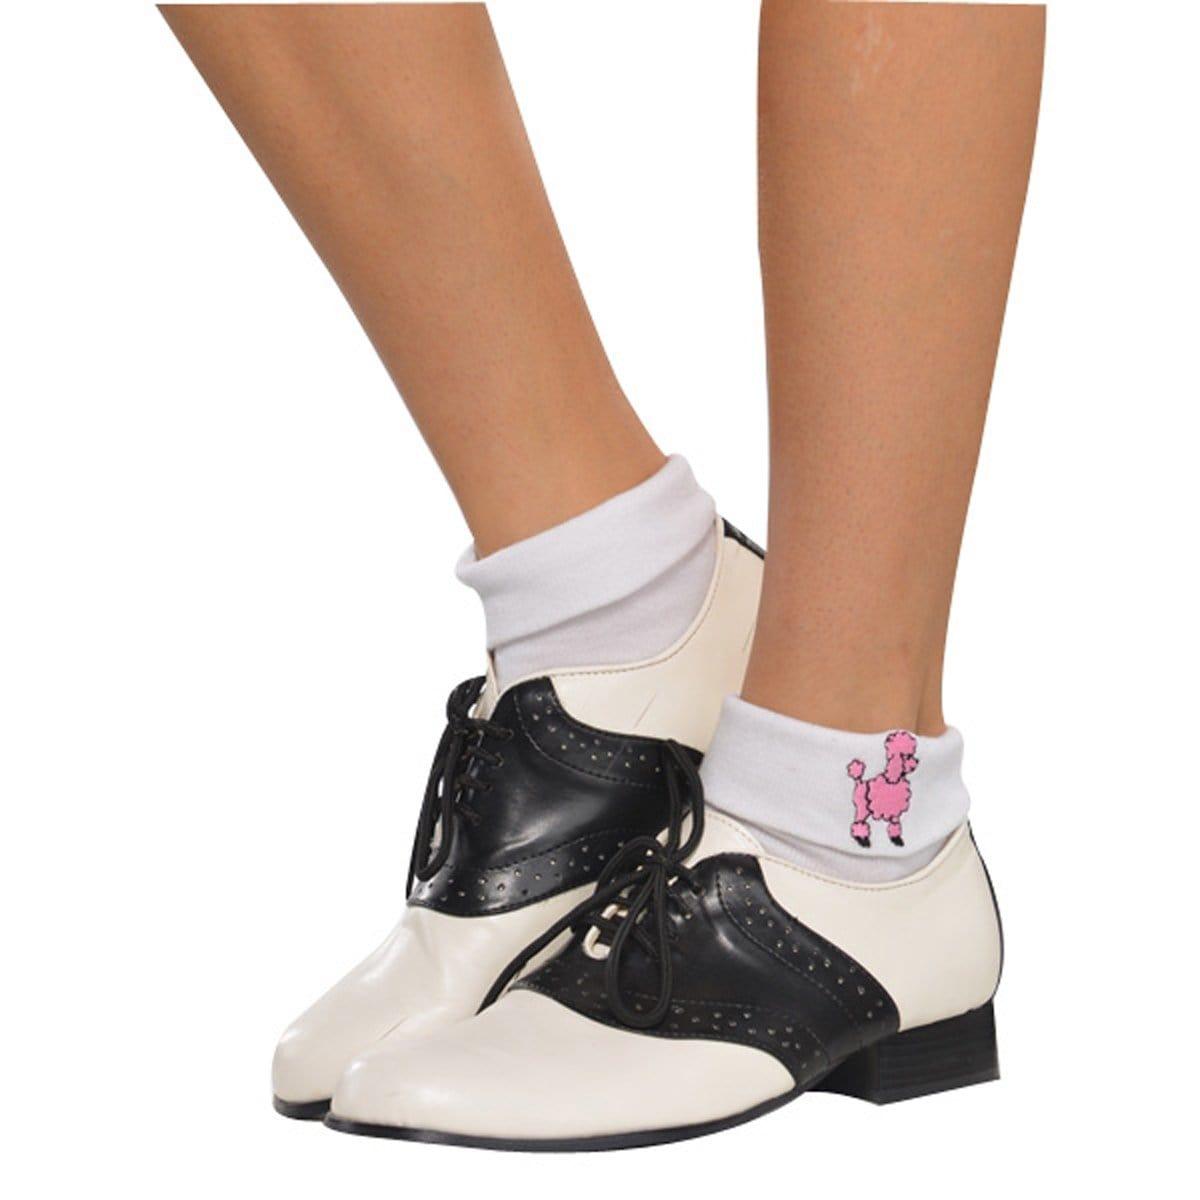 Sock Hop Socks for Women